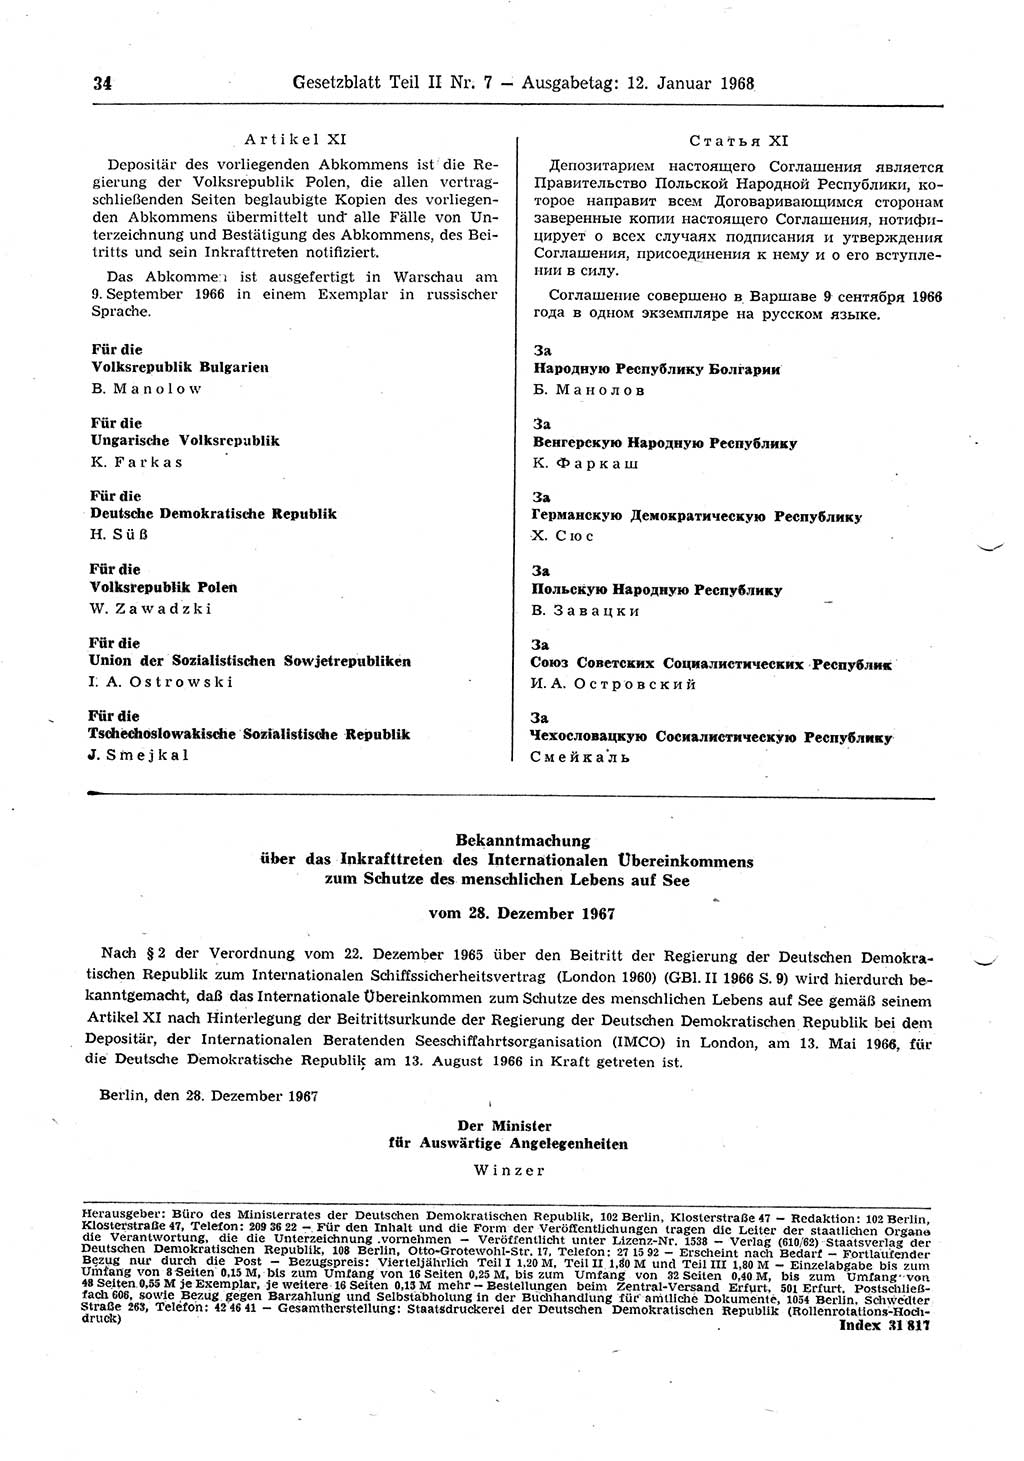 Gesetzblatt (GBl.) der Deutschen Demokratischen Republik (DDR) Teil ⅠⅠ 1968, Seite 34 (GBl. DDR ⅠⅠ 1968, S. 34)